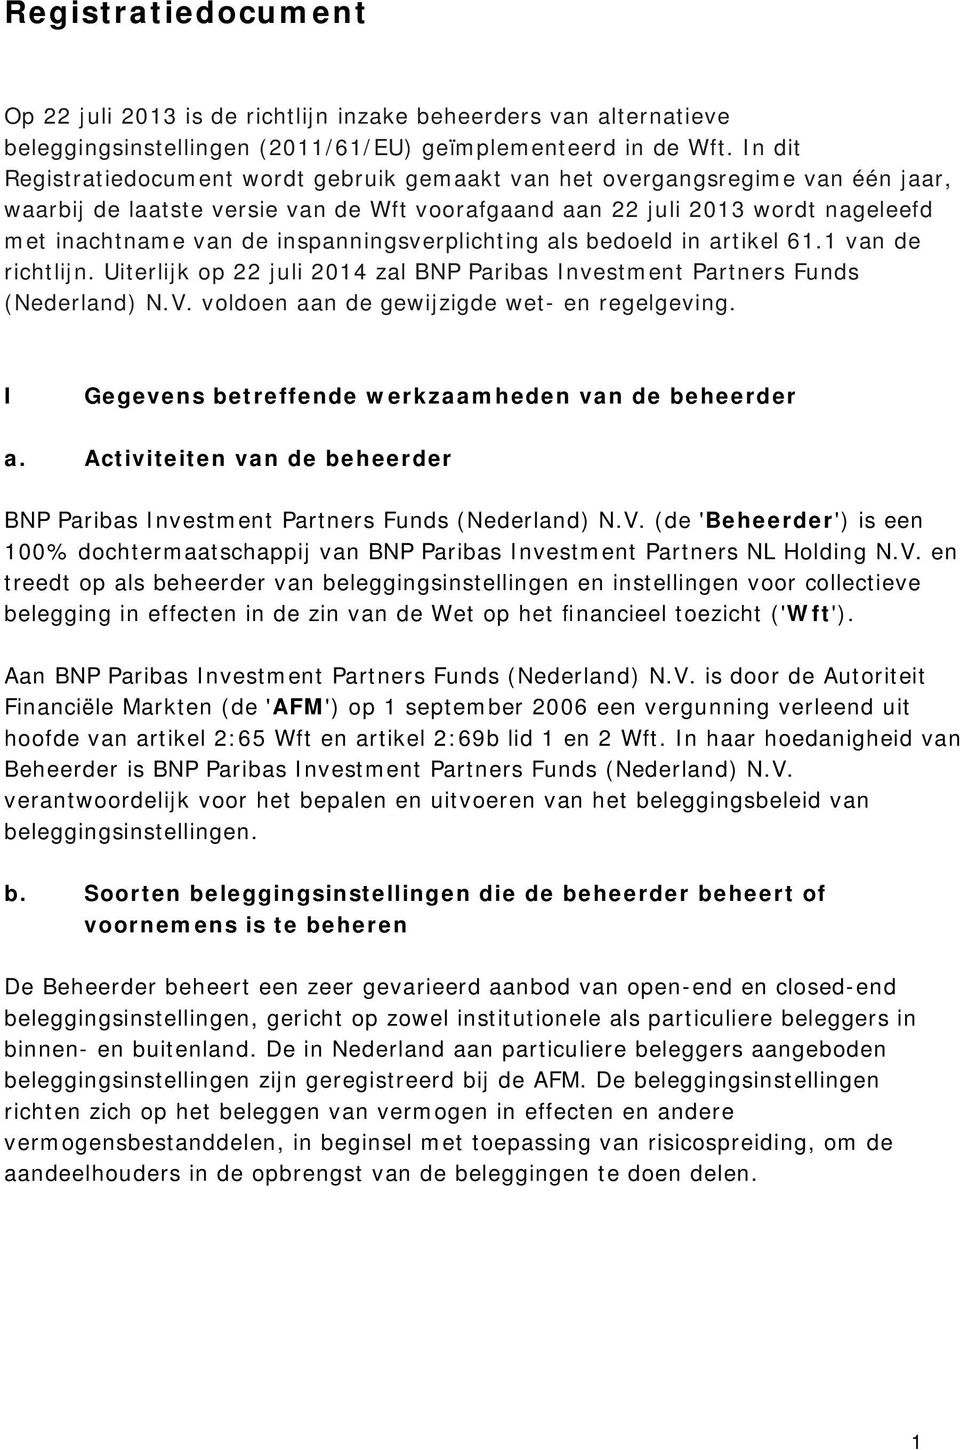 inspanningsverplichting als bedoeld in artikel 61.1 van de richtlijn. Uiterlijk op 22 juli 2014 zal BNP Paribas Investment Partners Funds (Nederland) N.V.